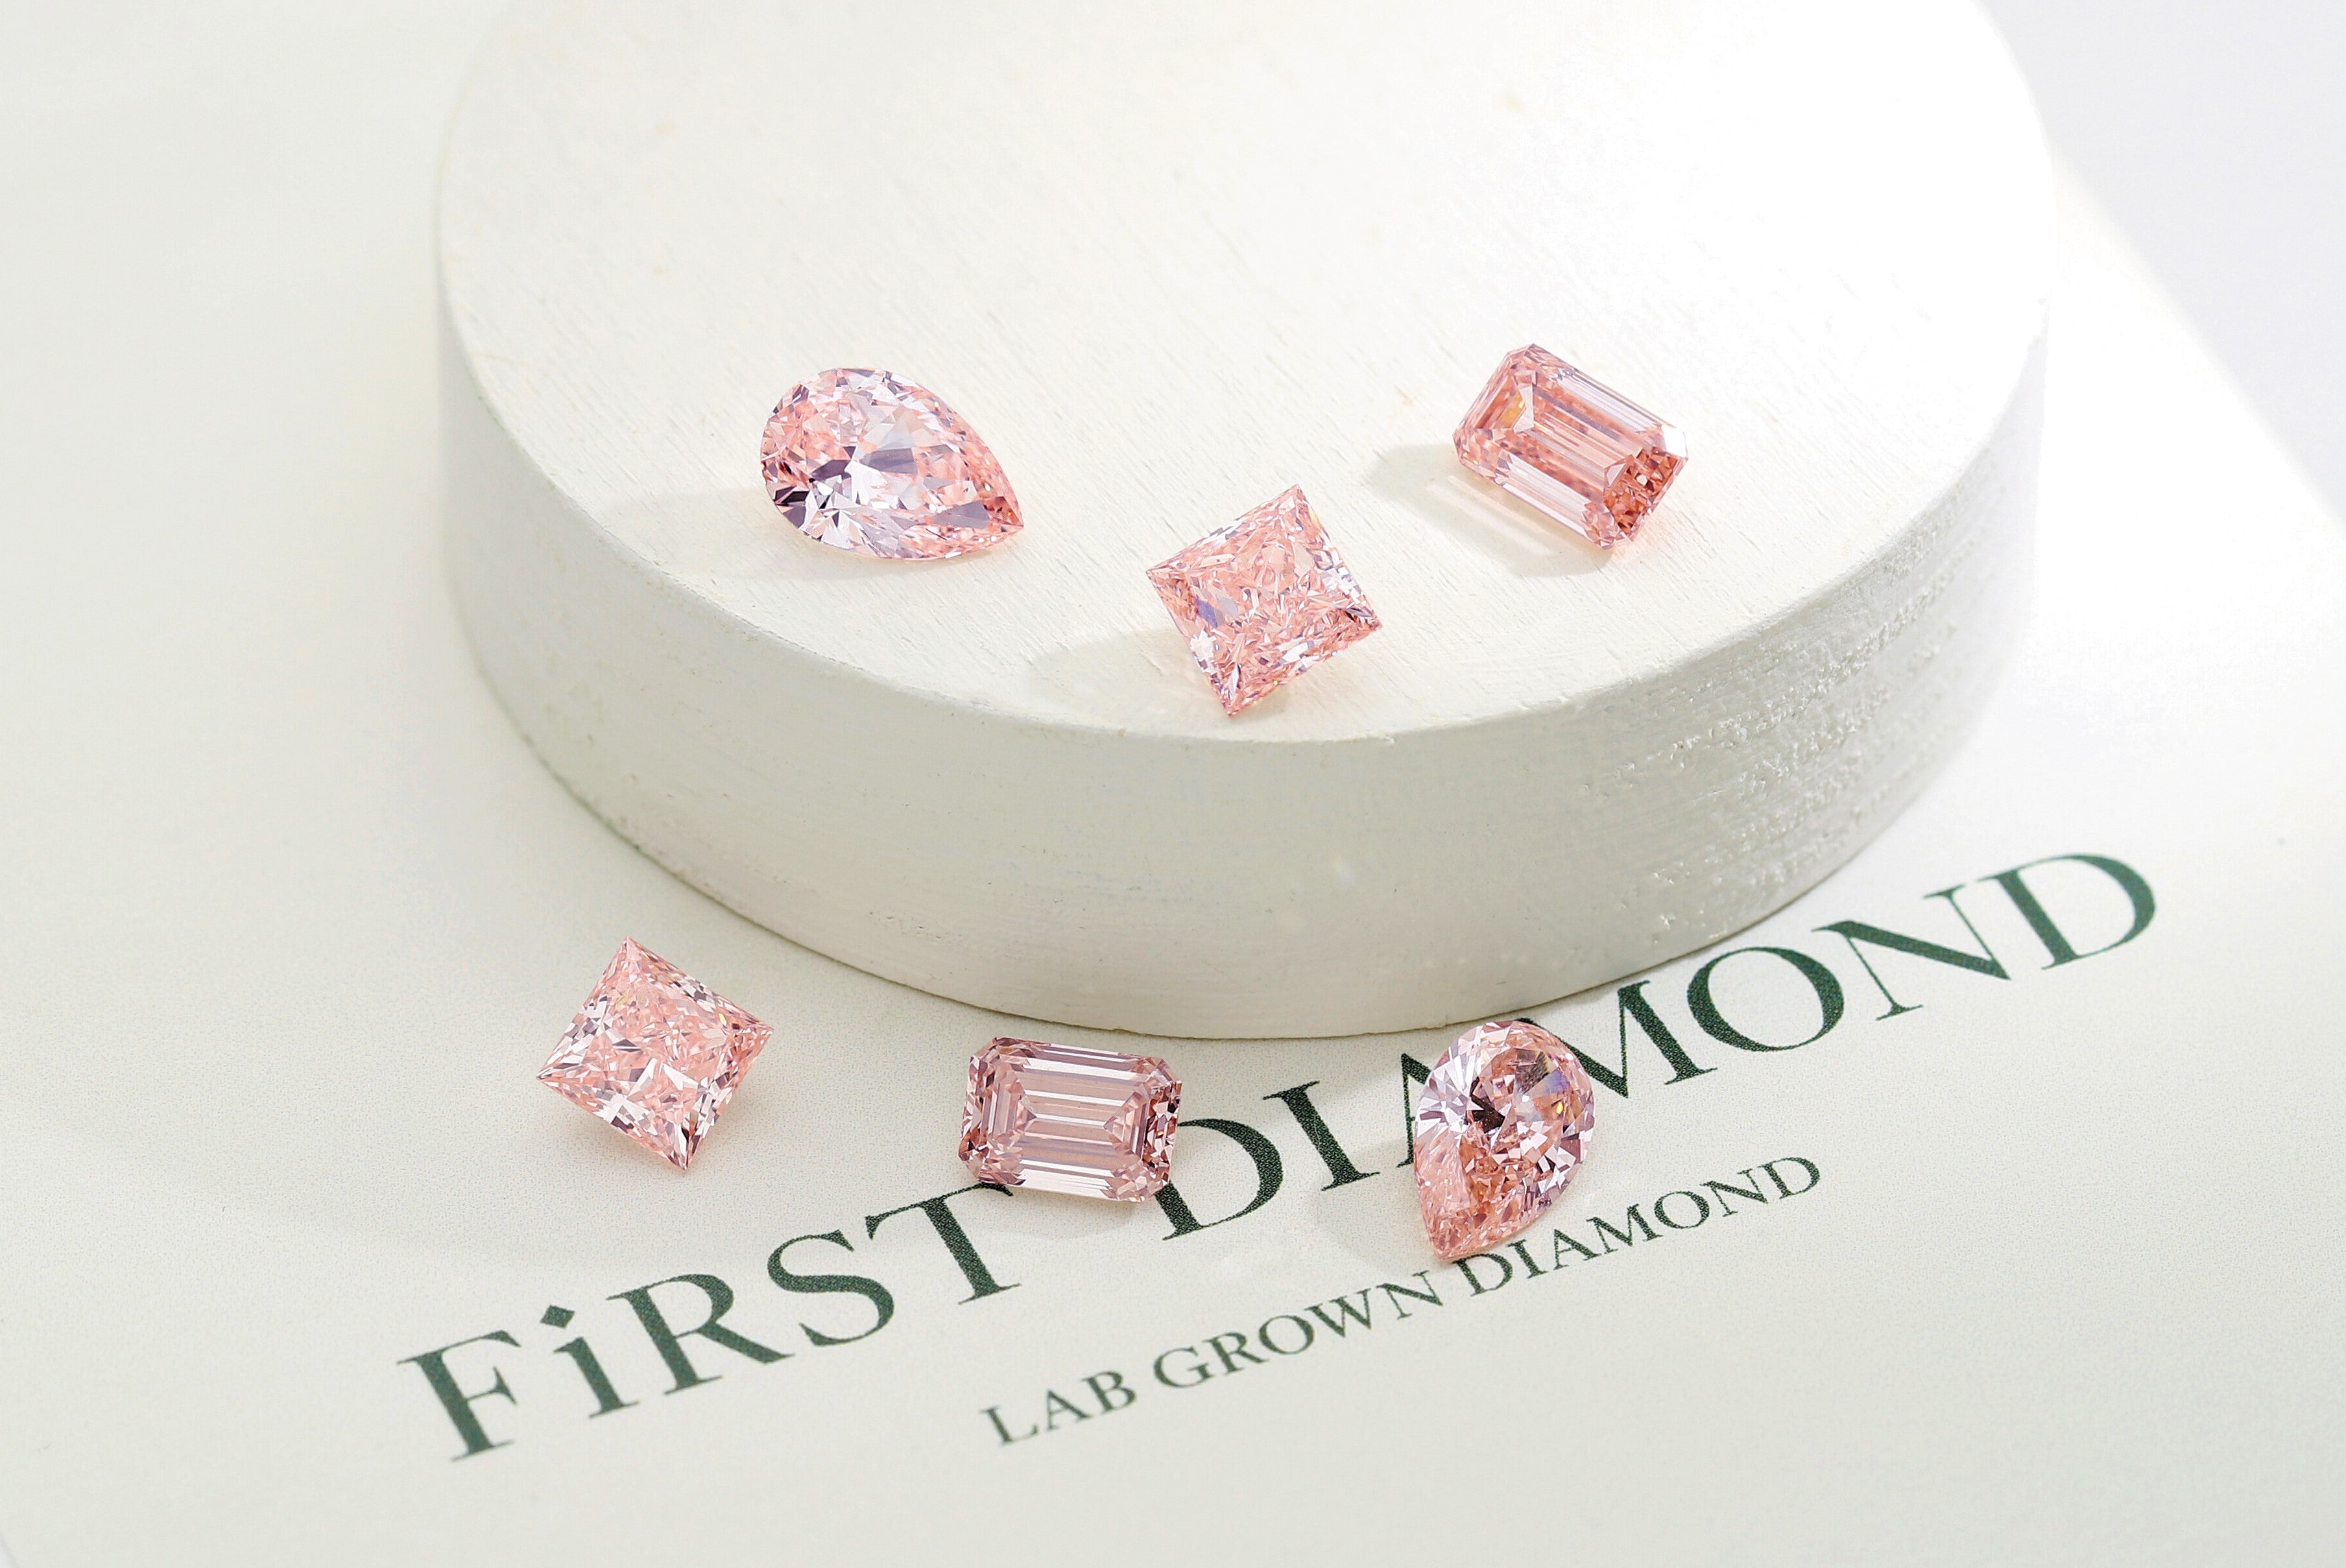 [서울경제] First Diamond, 랩그로운 핑크 다이아몬드 선보여